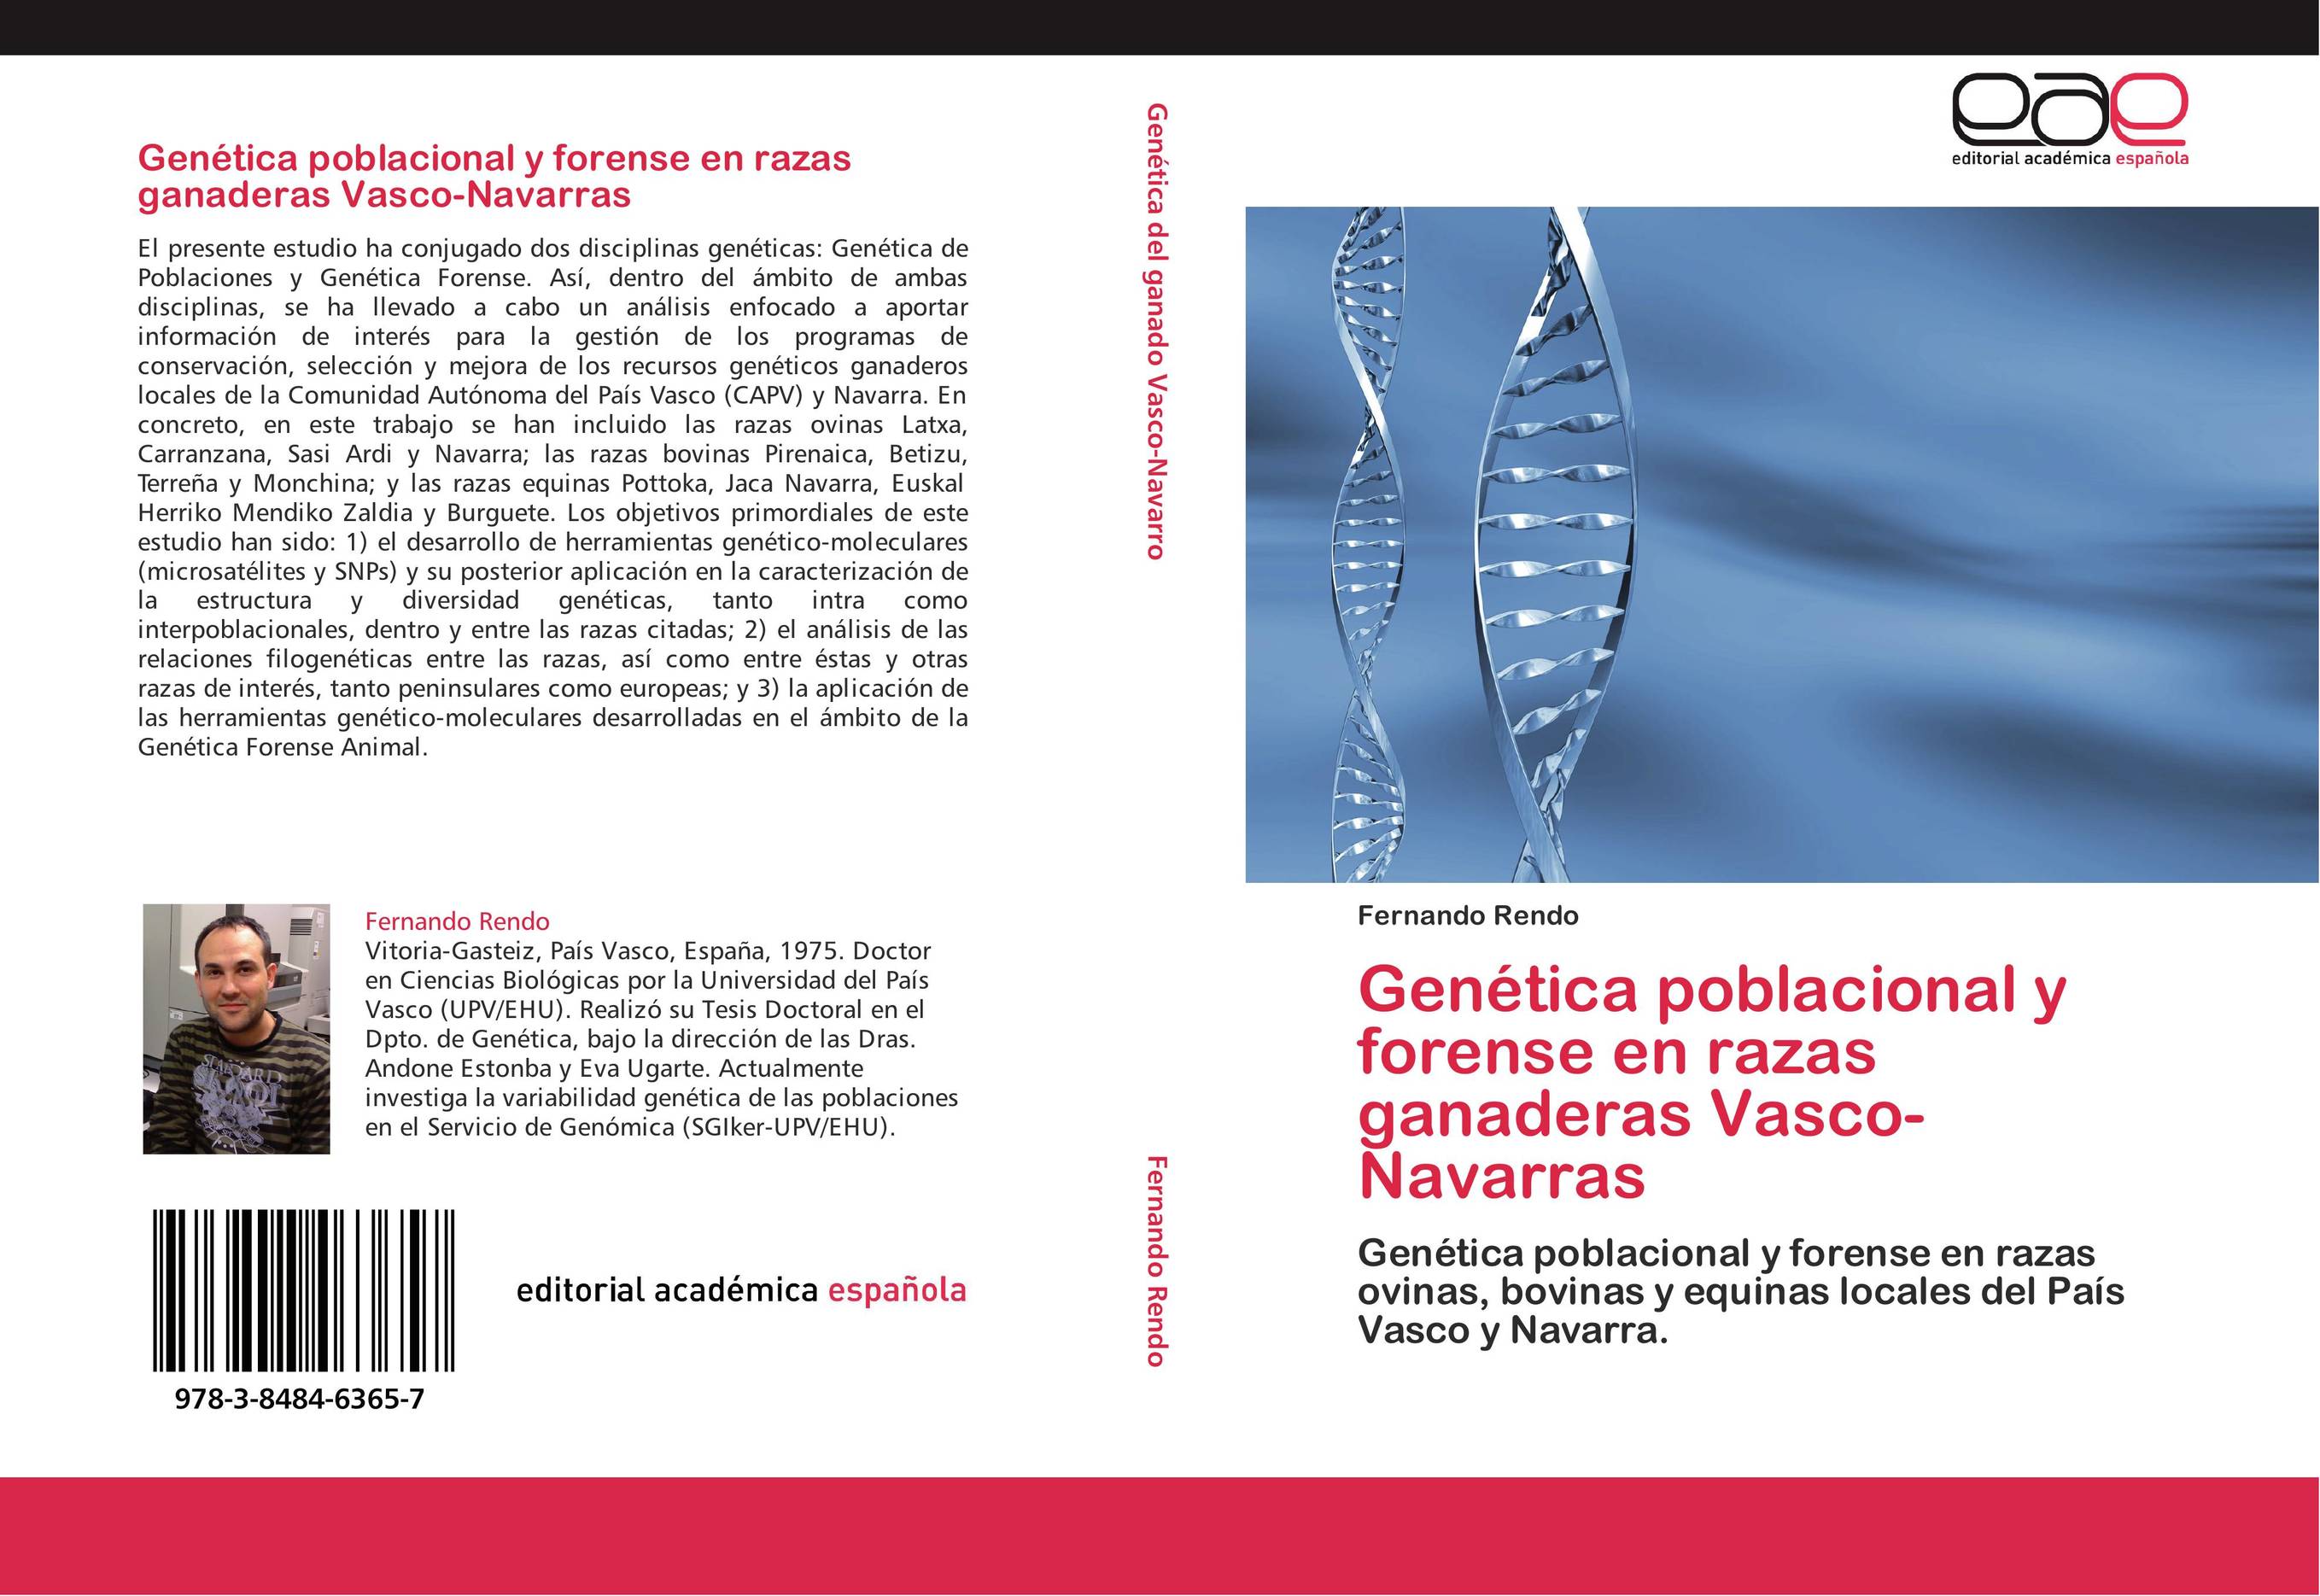 Genética poblacional y forense en razas ganaderas Vasco-Navarras